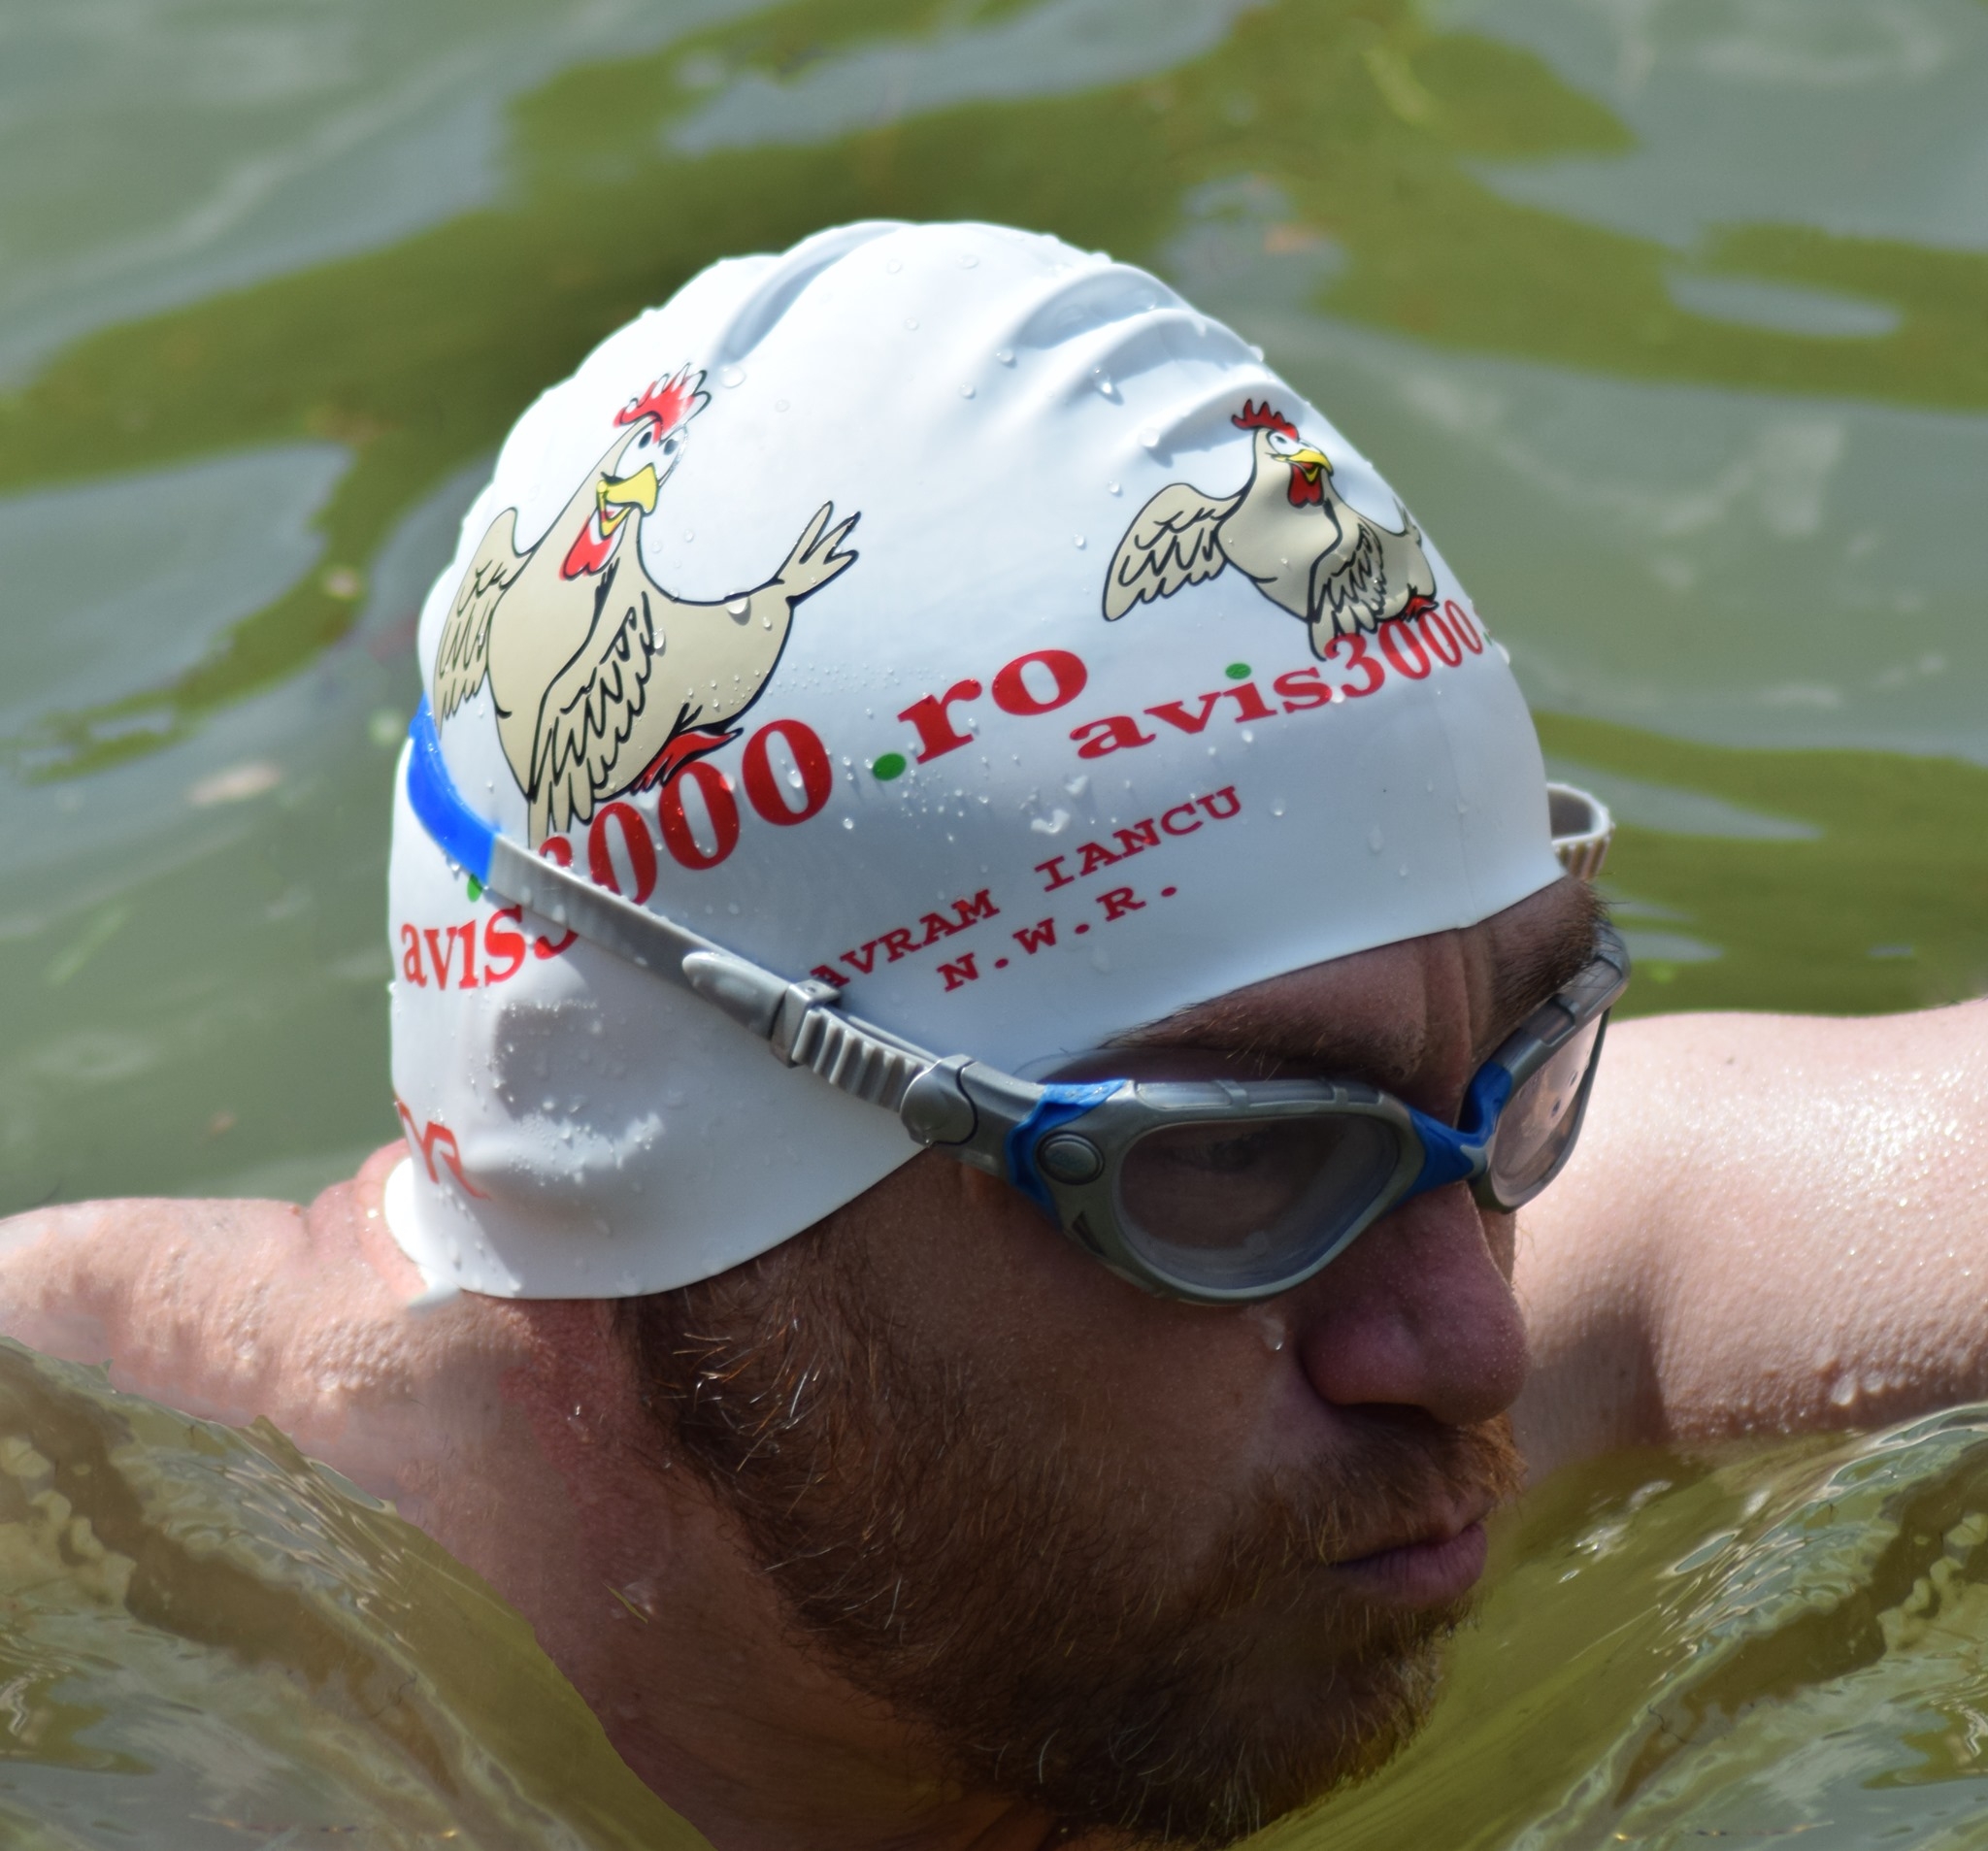 Celebrul înotător Avram Iancu va traversa înot lacul Izvorul Muntelui